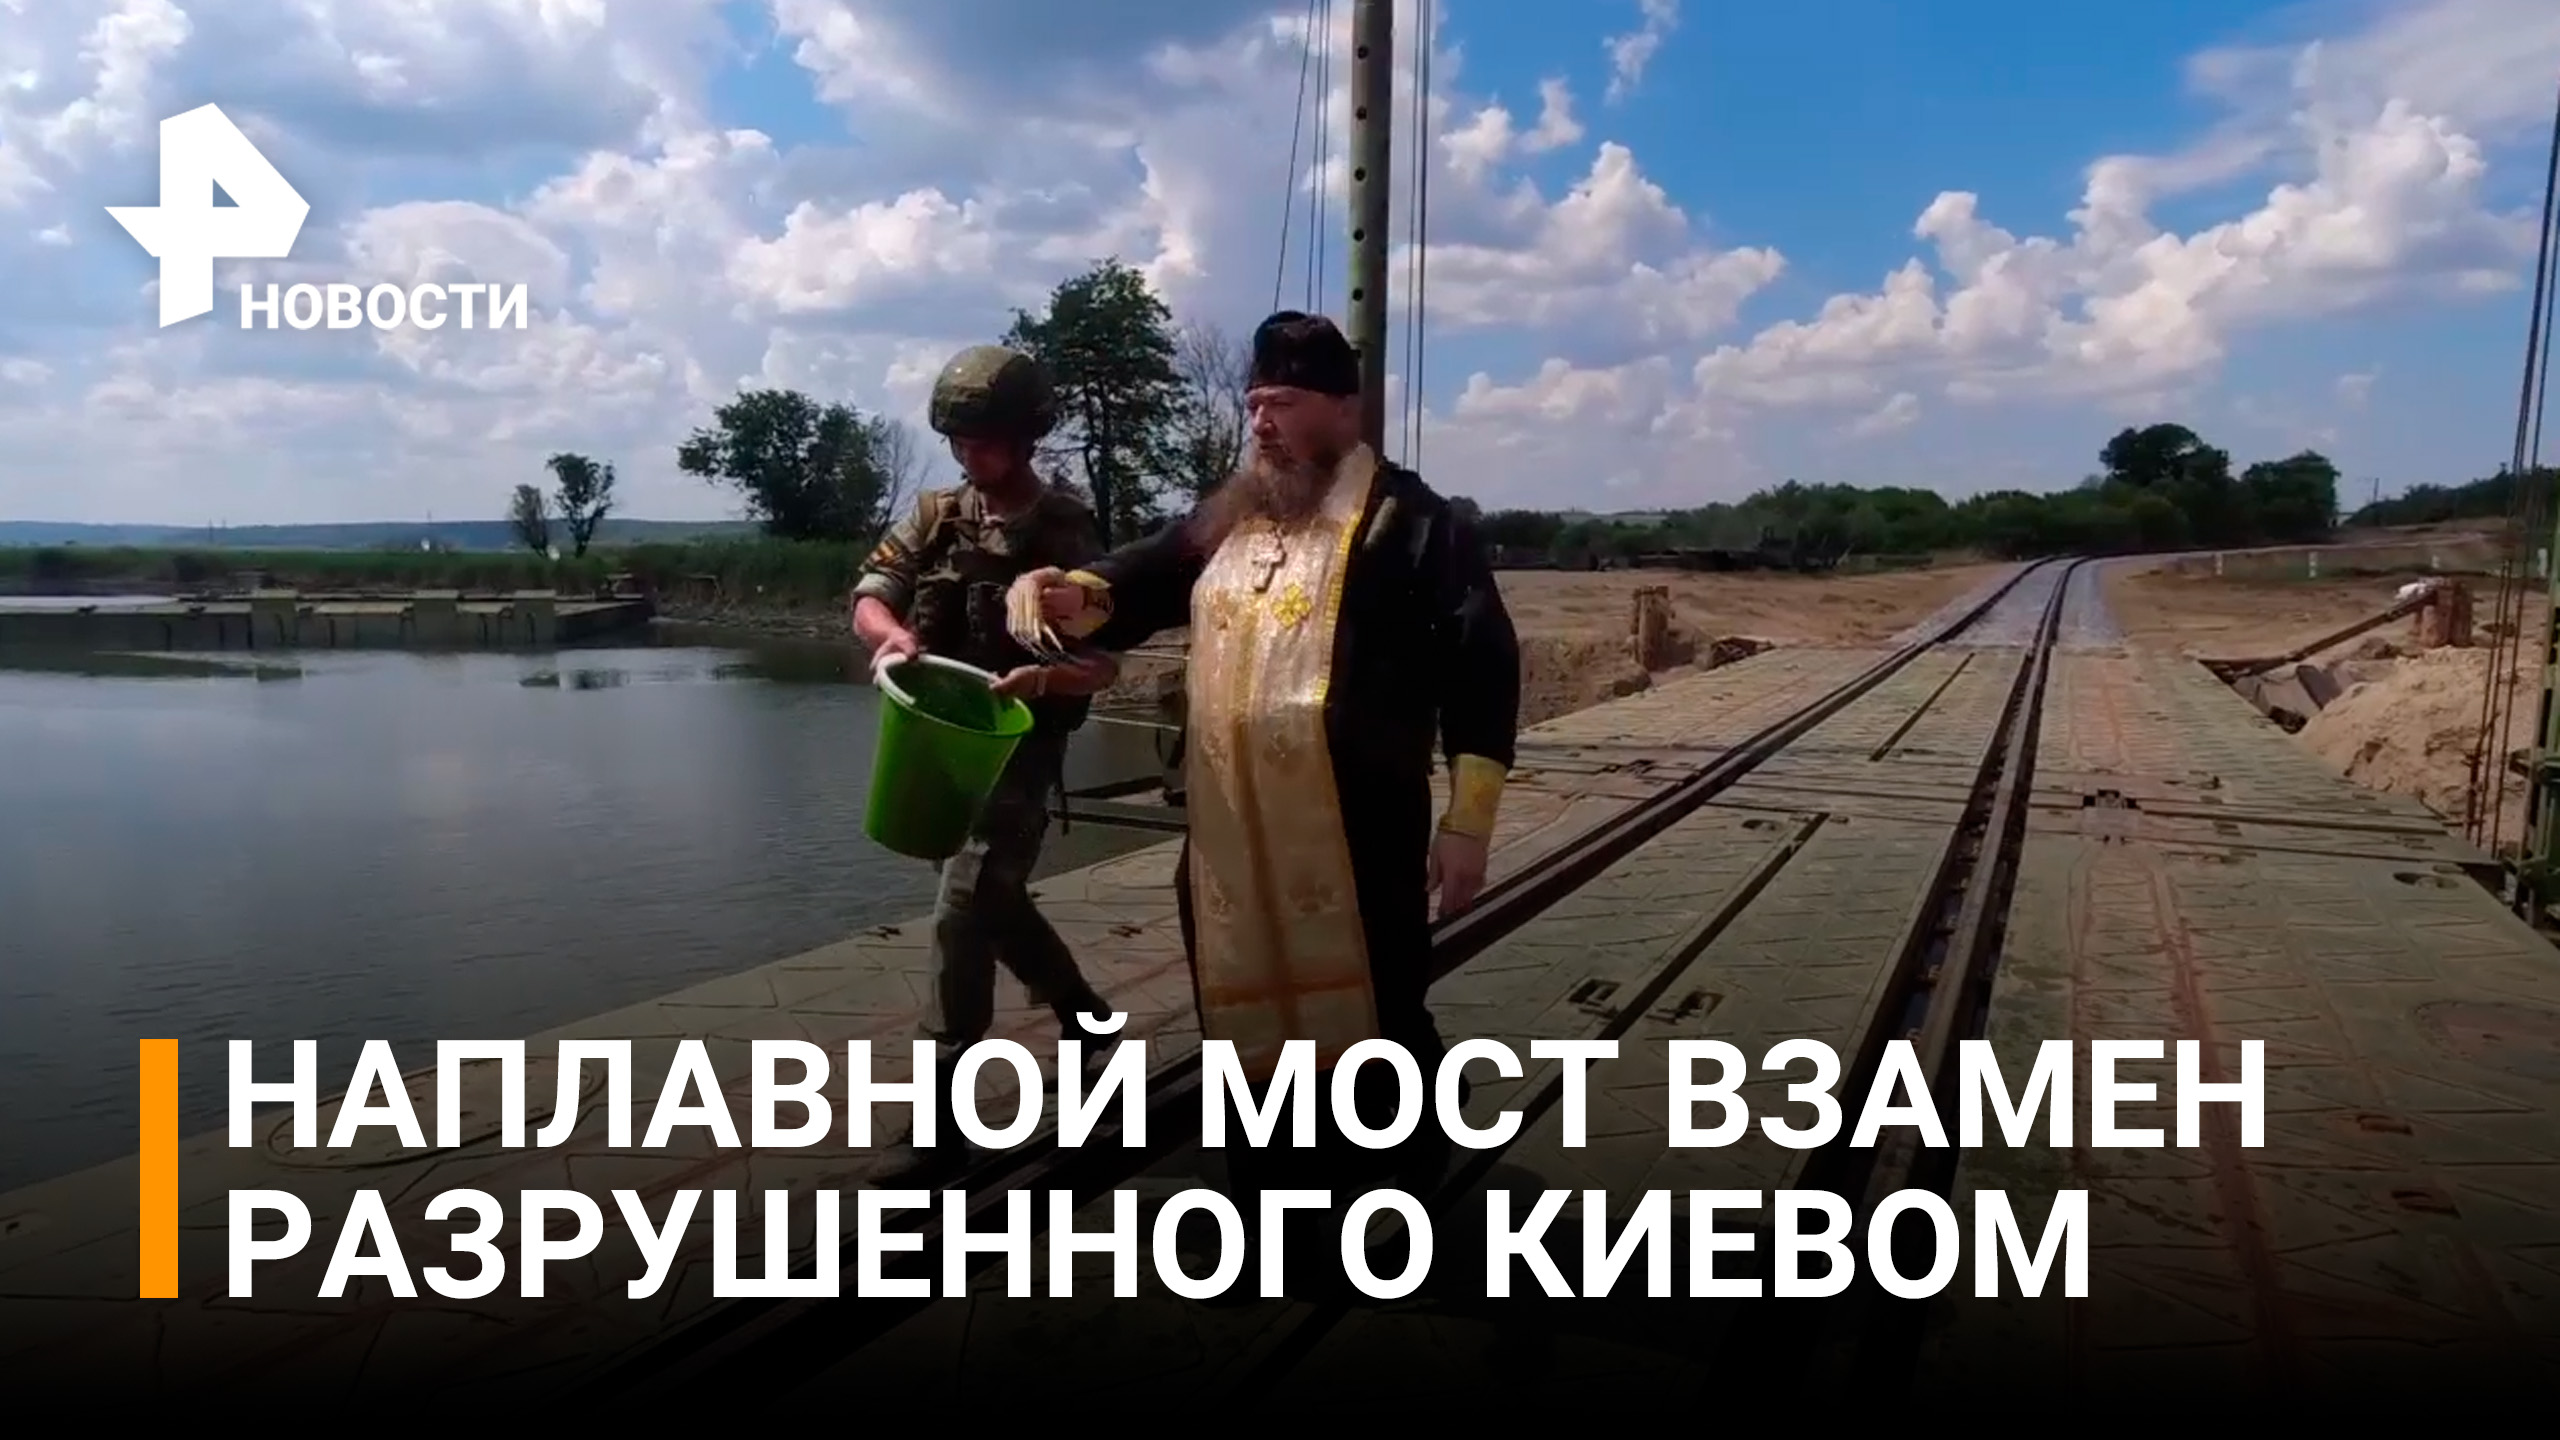 Русские войска установили новый мост взамен разрушенного националистами / РЕН Новости